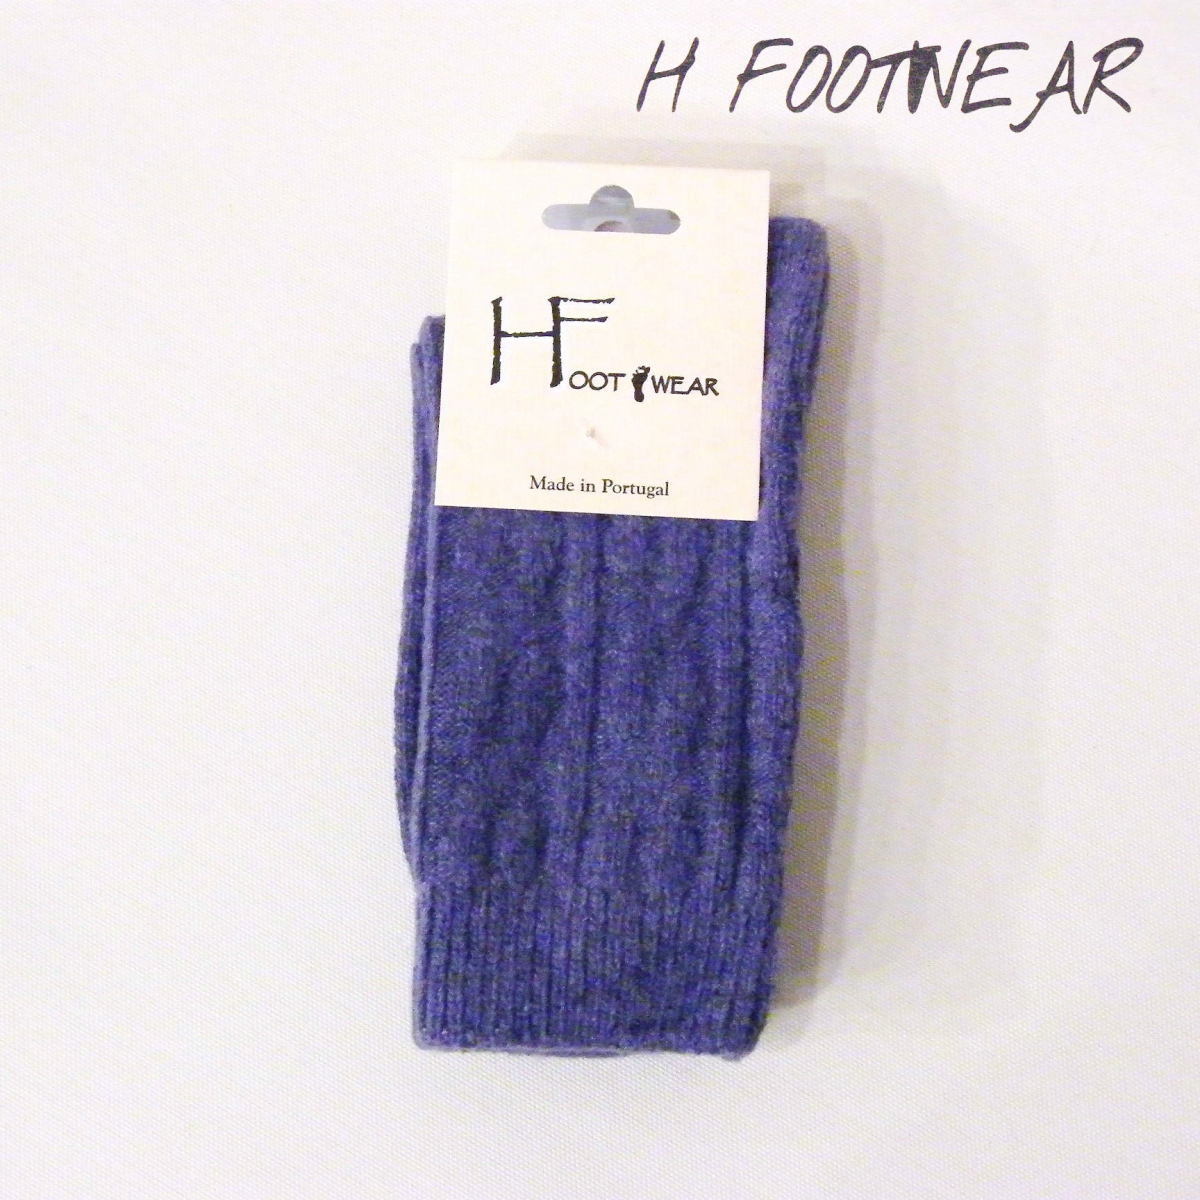 ポルトガル製 ケーブル編みウールソックス 靴下 レディース パープル バイオレット 紫 おしゃれ 新品 未使用 通販 H FOOTWEAR